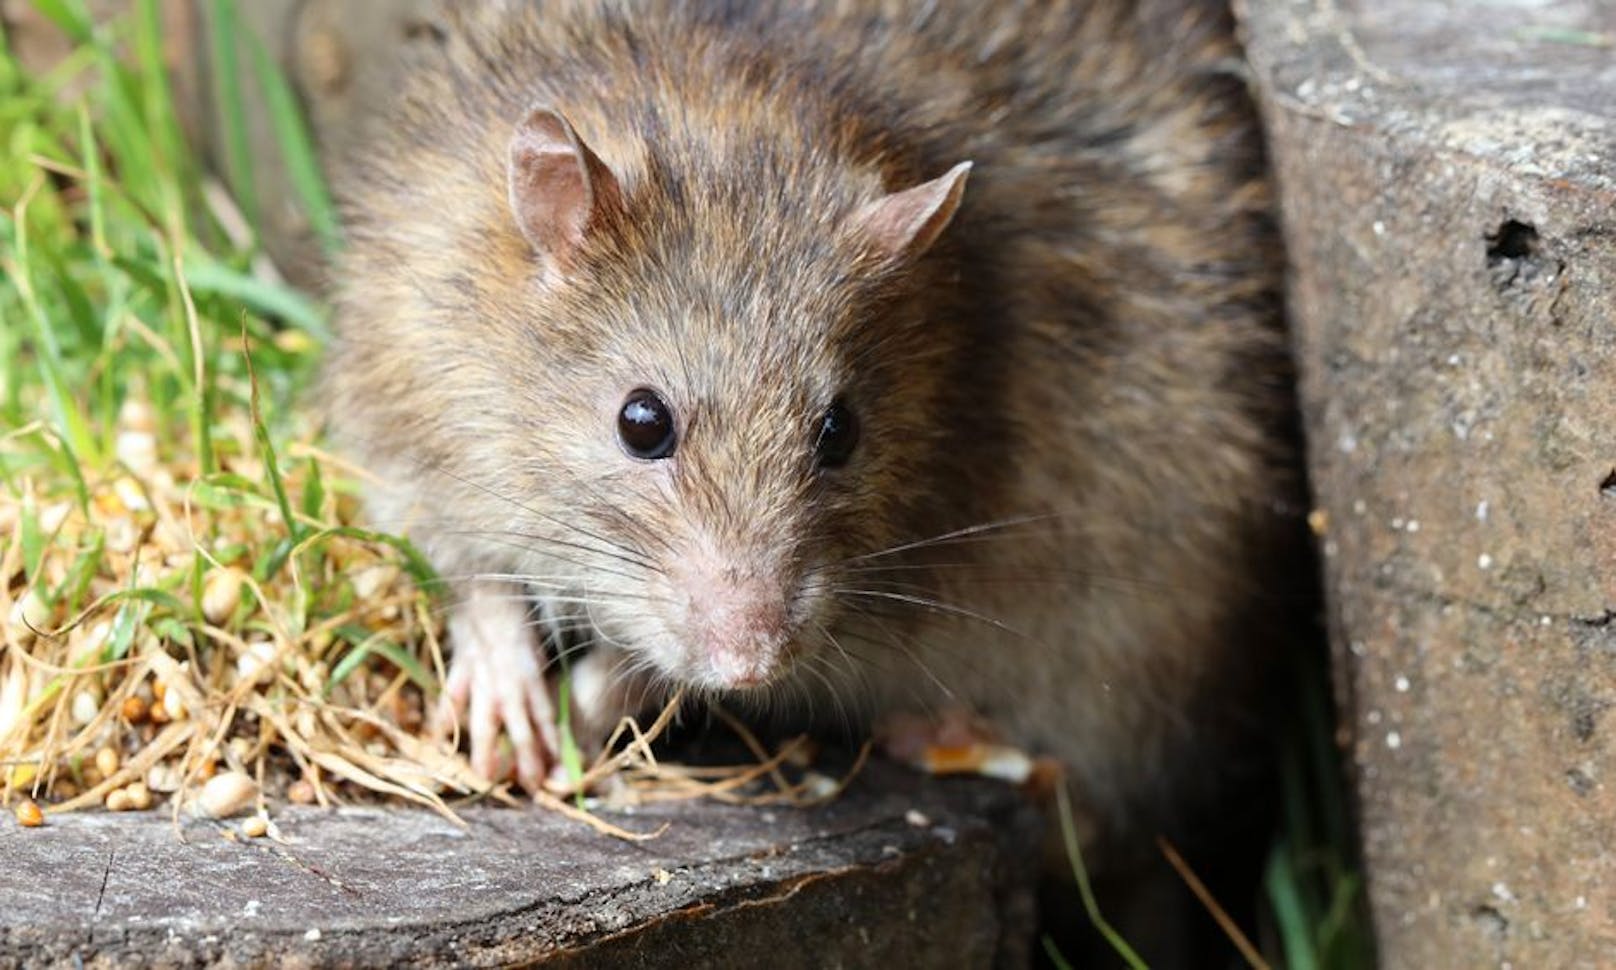 Infektion durch Ratte endet tödlich - Gesundheit | heute.at